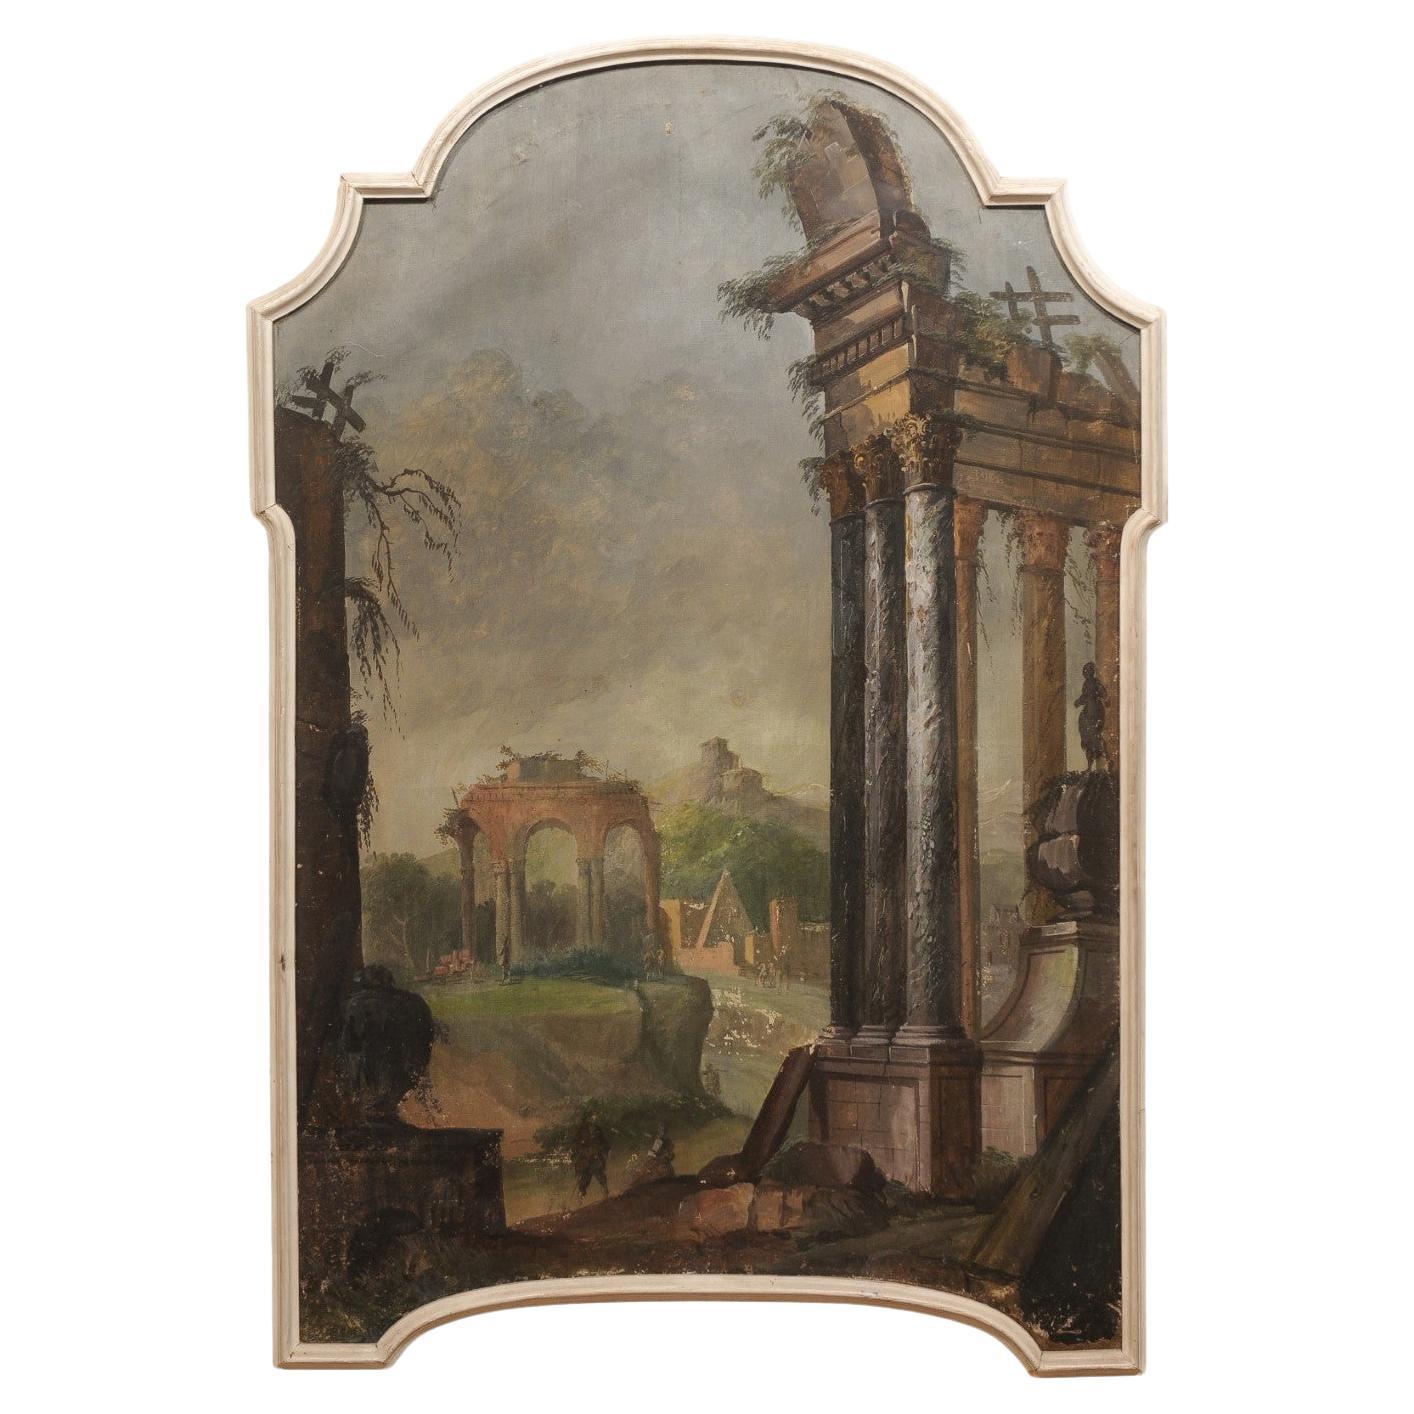 Italienische Landschaft im klassischen Stil des 19. Jahrhunderts, Öl auf Leinwand, Landschaft in Rahmen